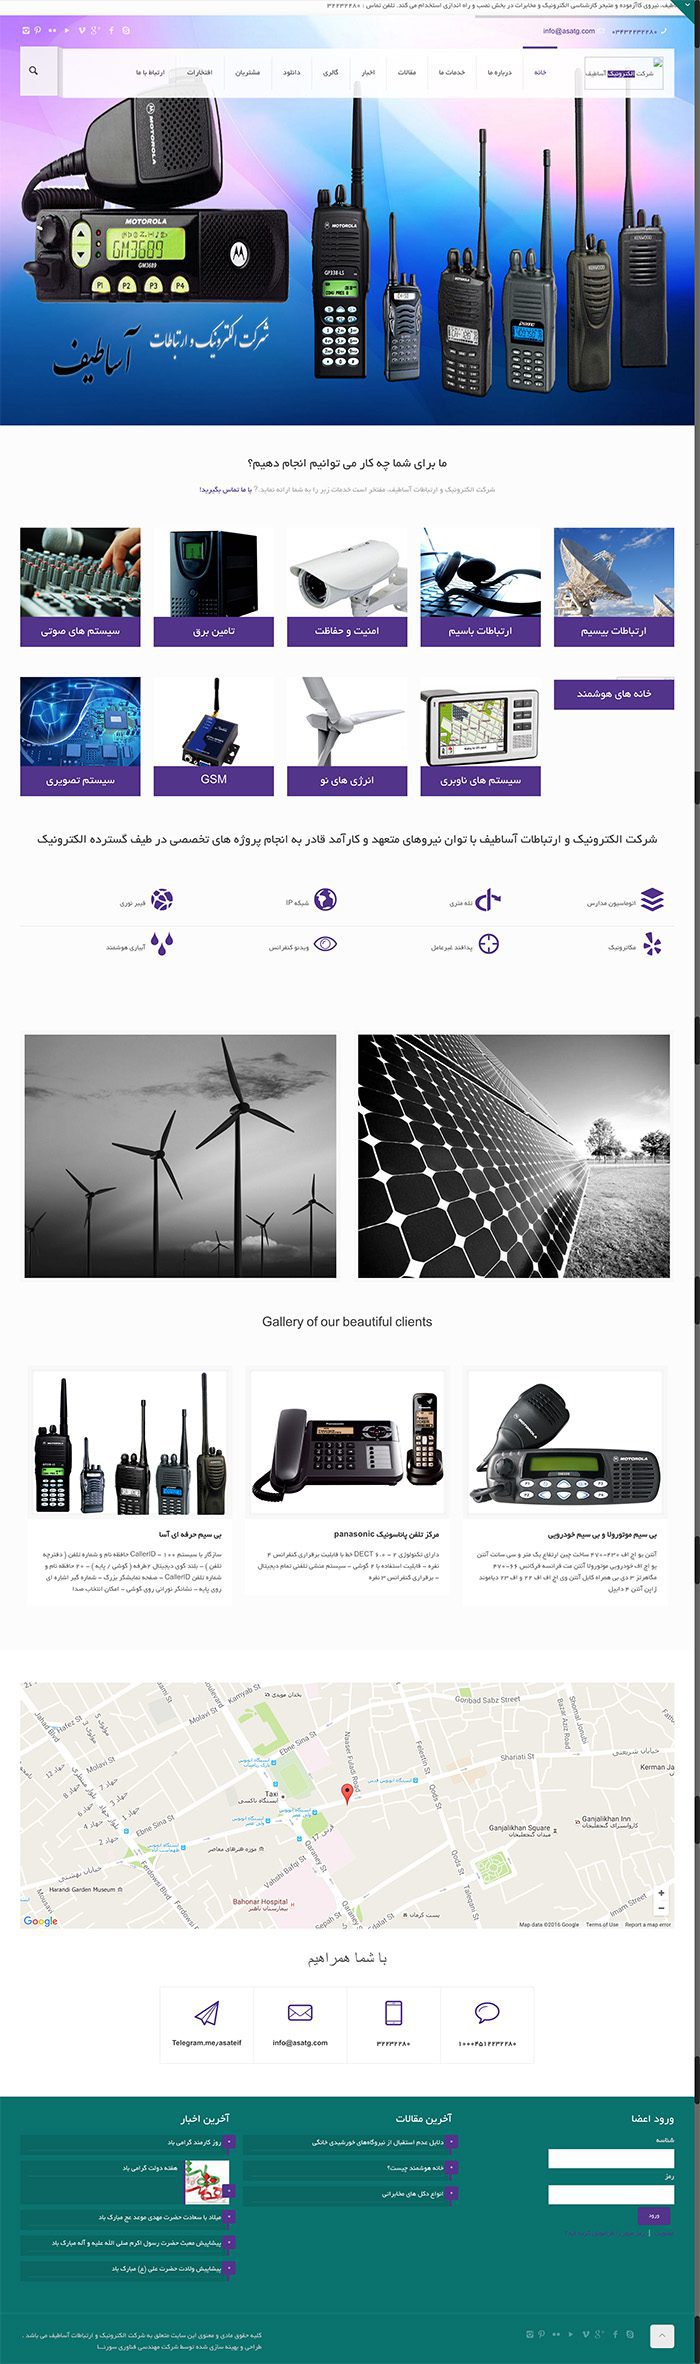 طراحی سایت شرکت الکترونیک آساطیف توسط شرکت طراحی سایت سورنا در کرمان